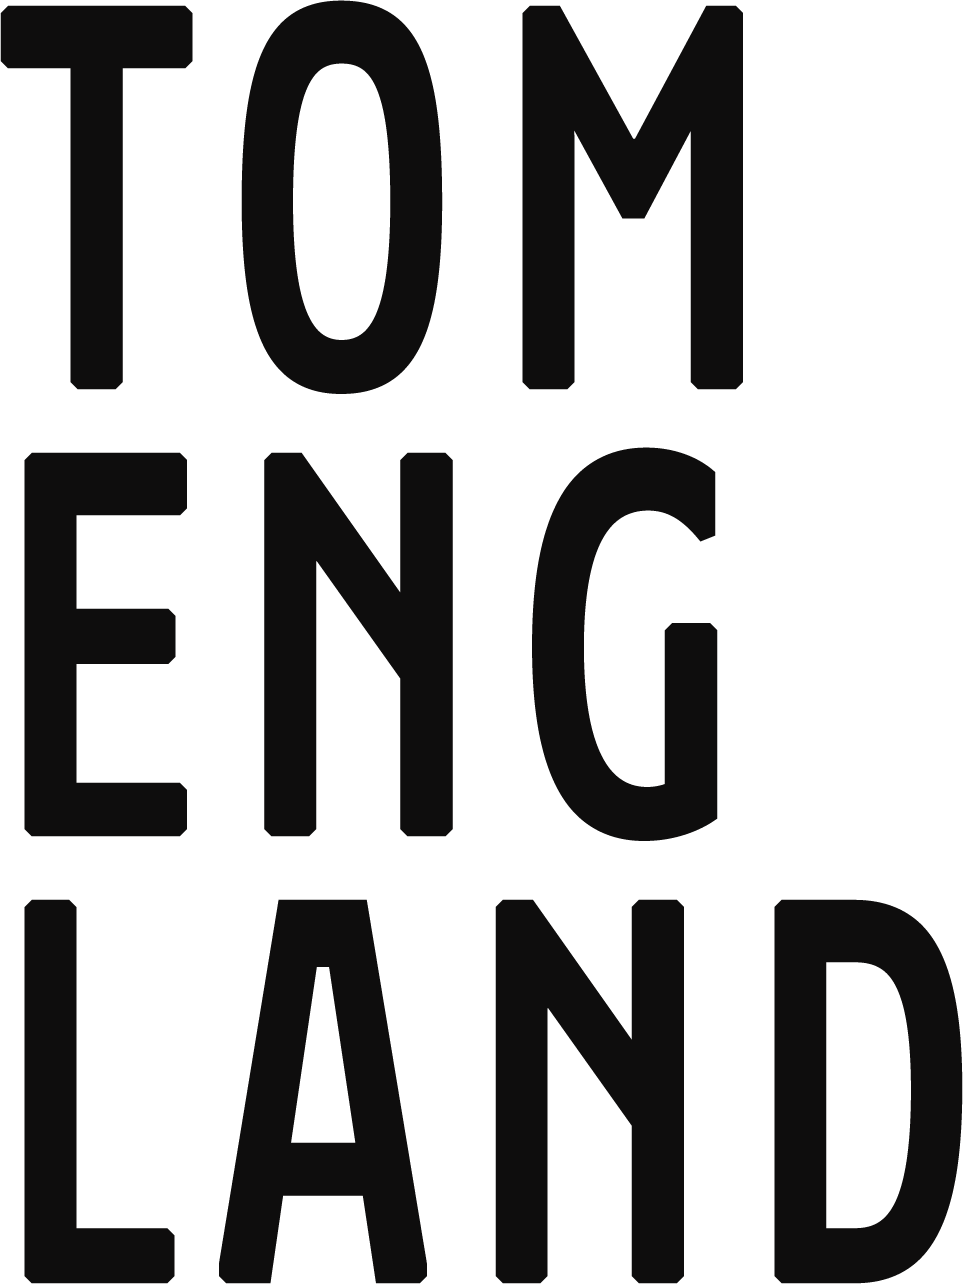 Tom England